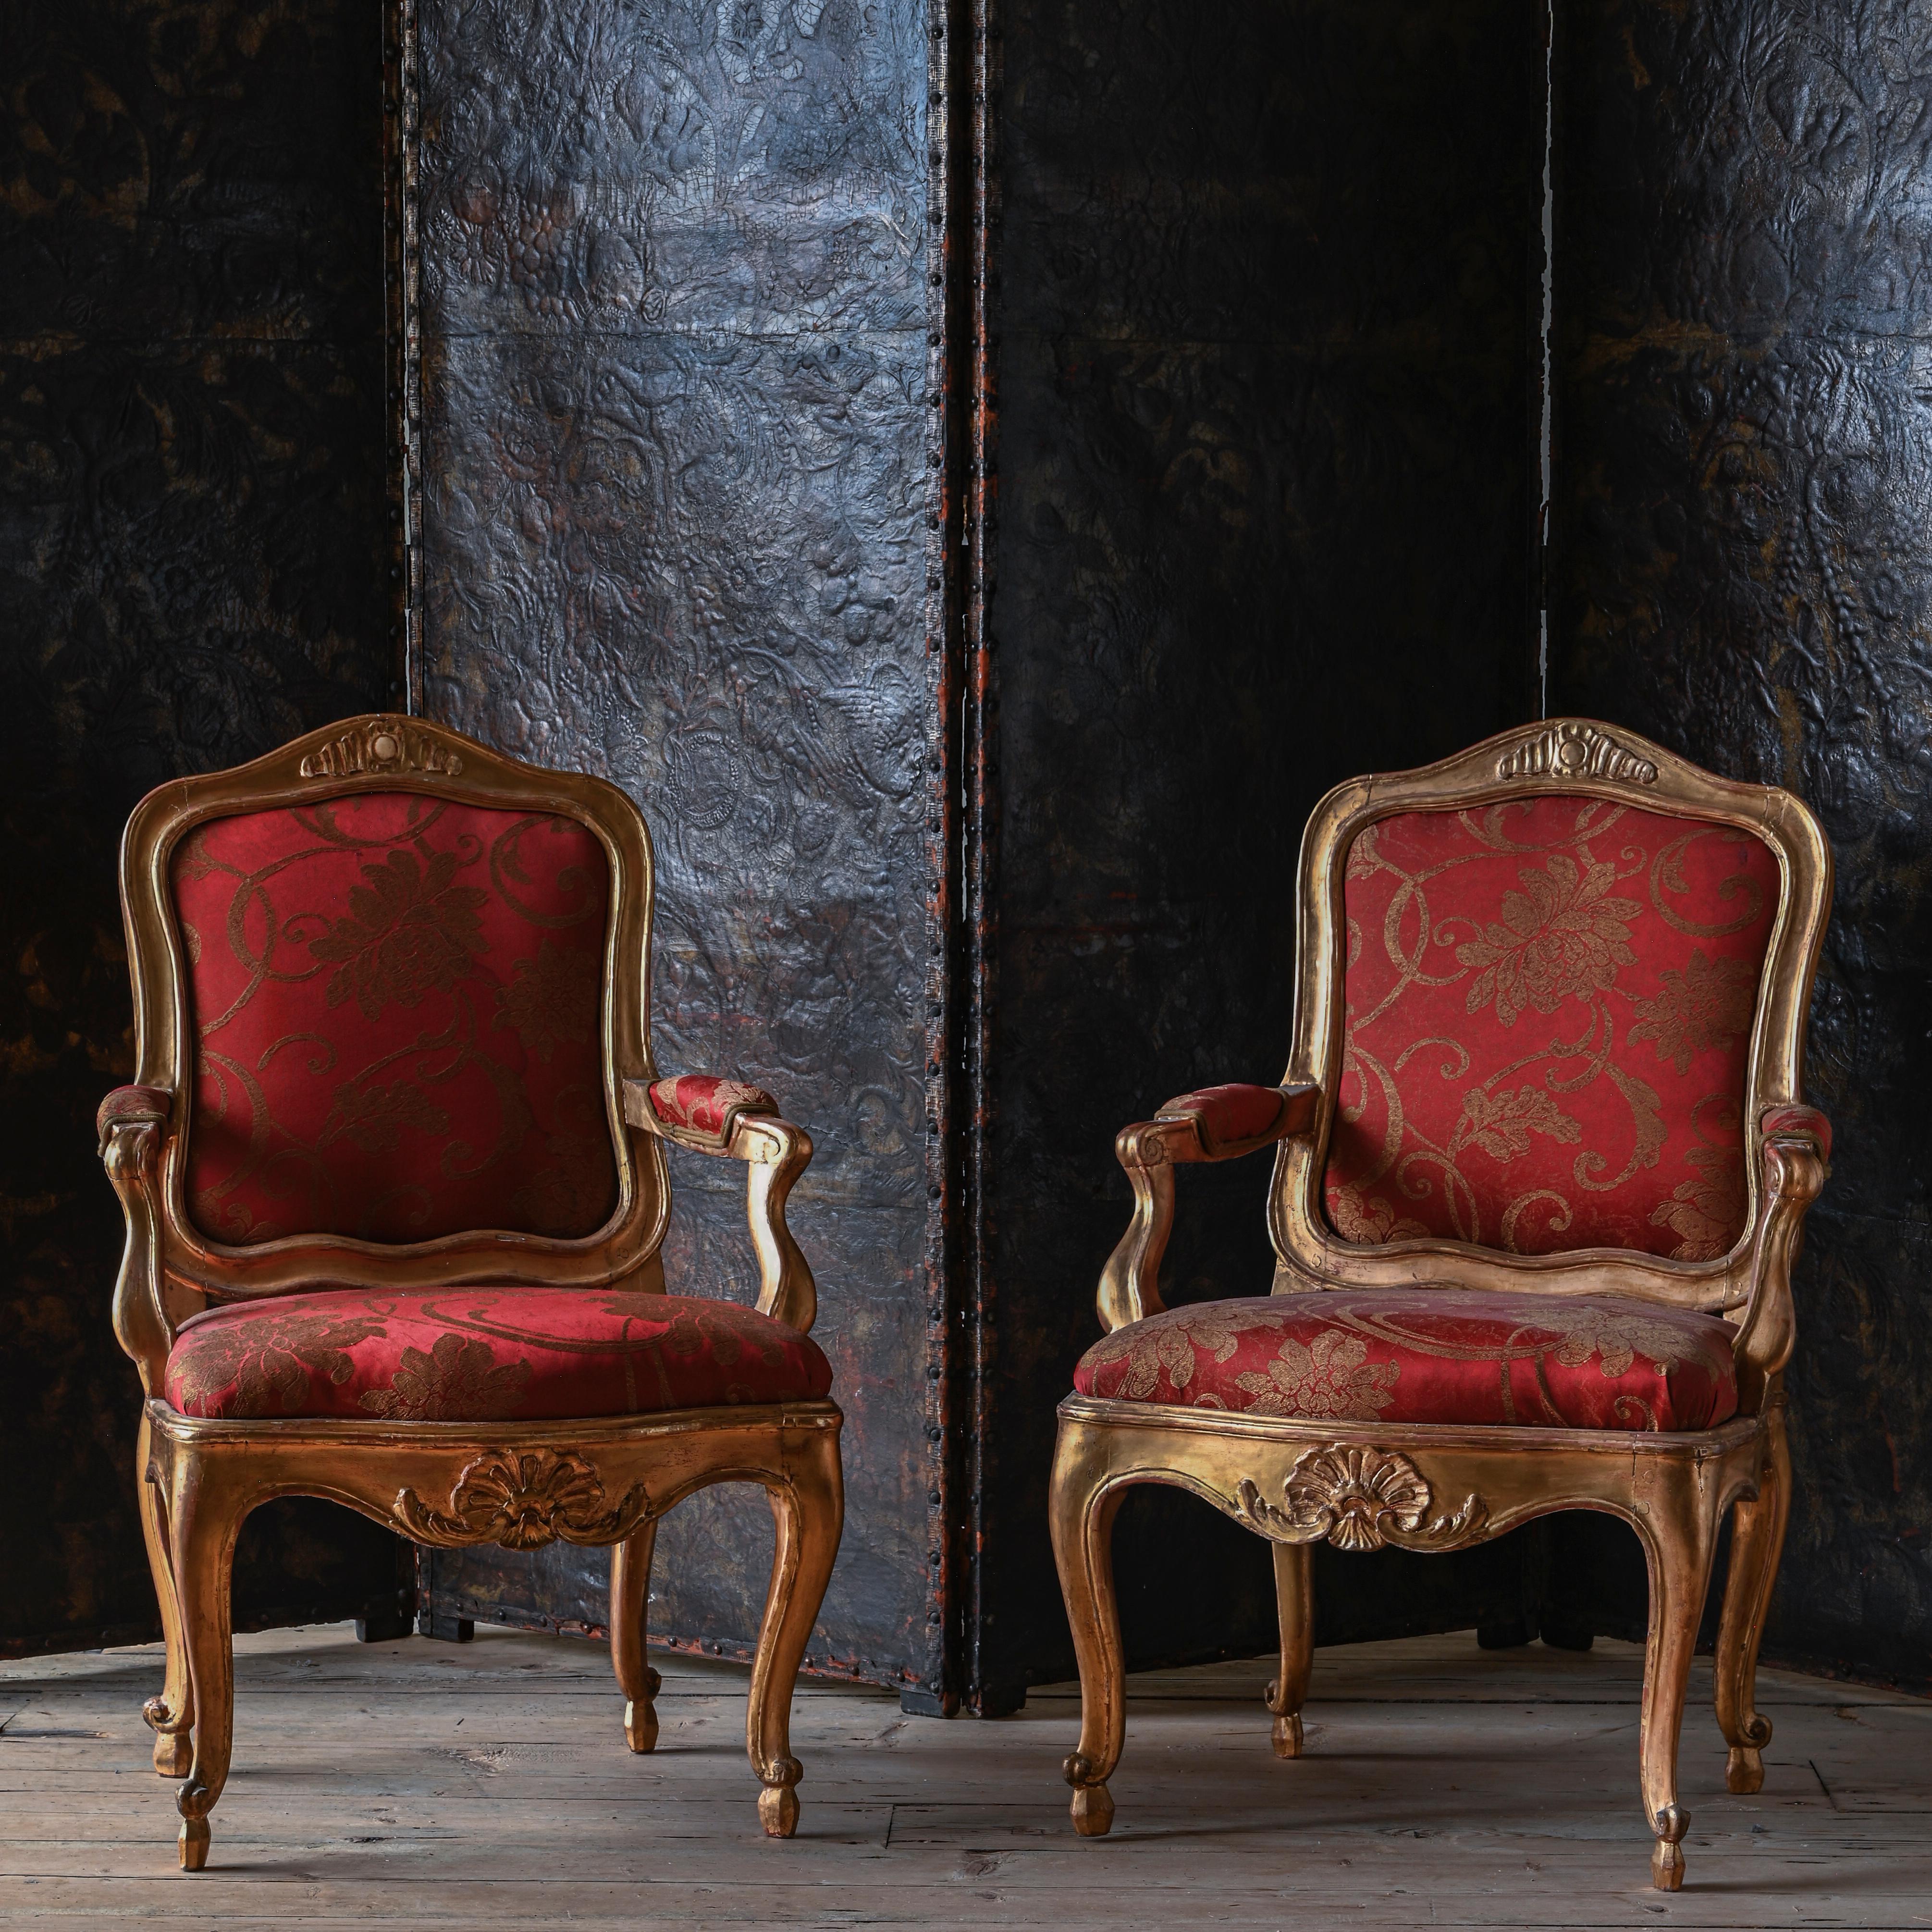 Feines Paar vergoldete Rokoko-Sessel aus dem 18. Jahrhundert. Stockholm, Schweden, um 1770. Ähnliche außergewöhnliche Stühle befinden sich im königlichen Palast in Stockholm.